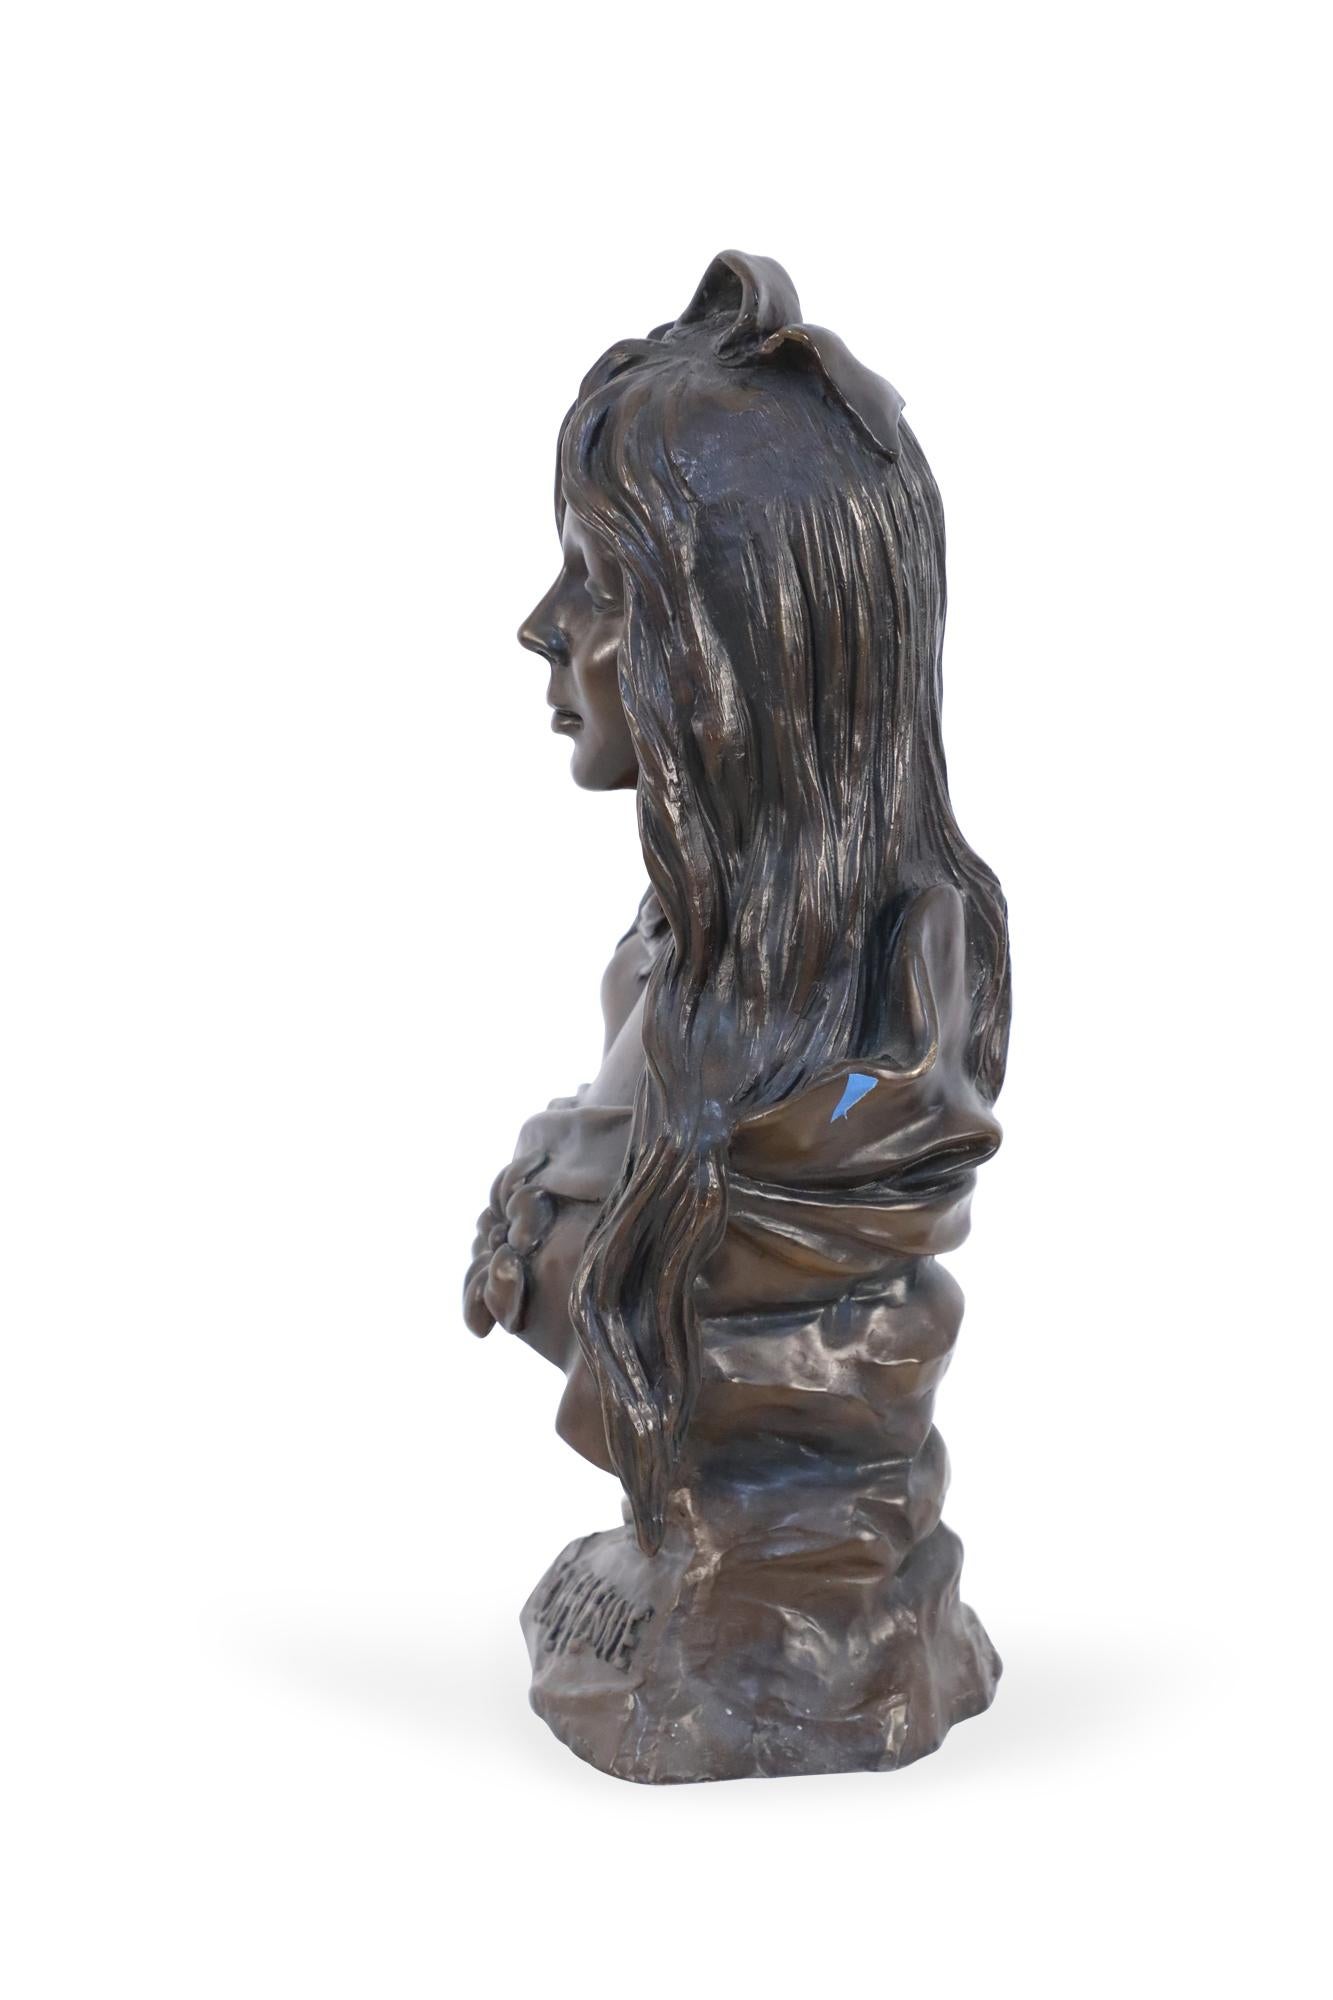 Buste en bronze de style Art nouveau français représentant une femme aux longs cheveux ondulés et au nœud dans une robe avec une fleur centrale et le mot 